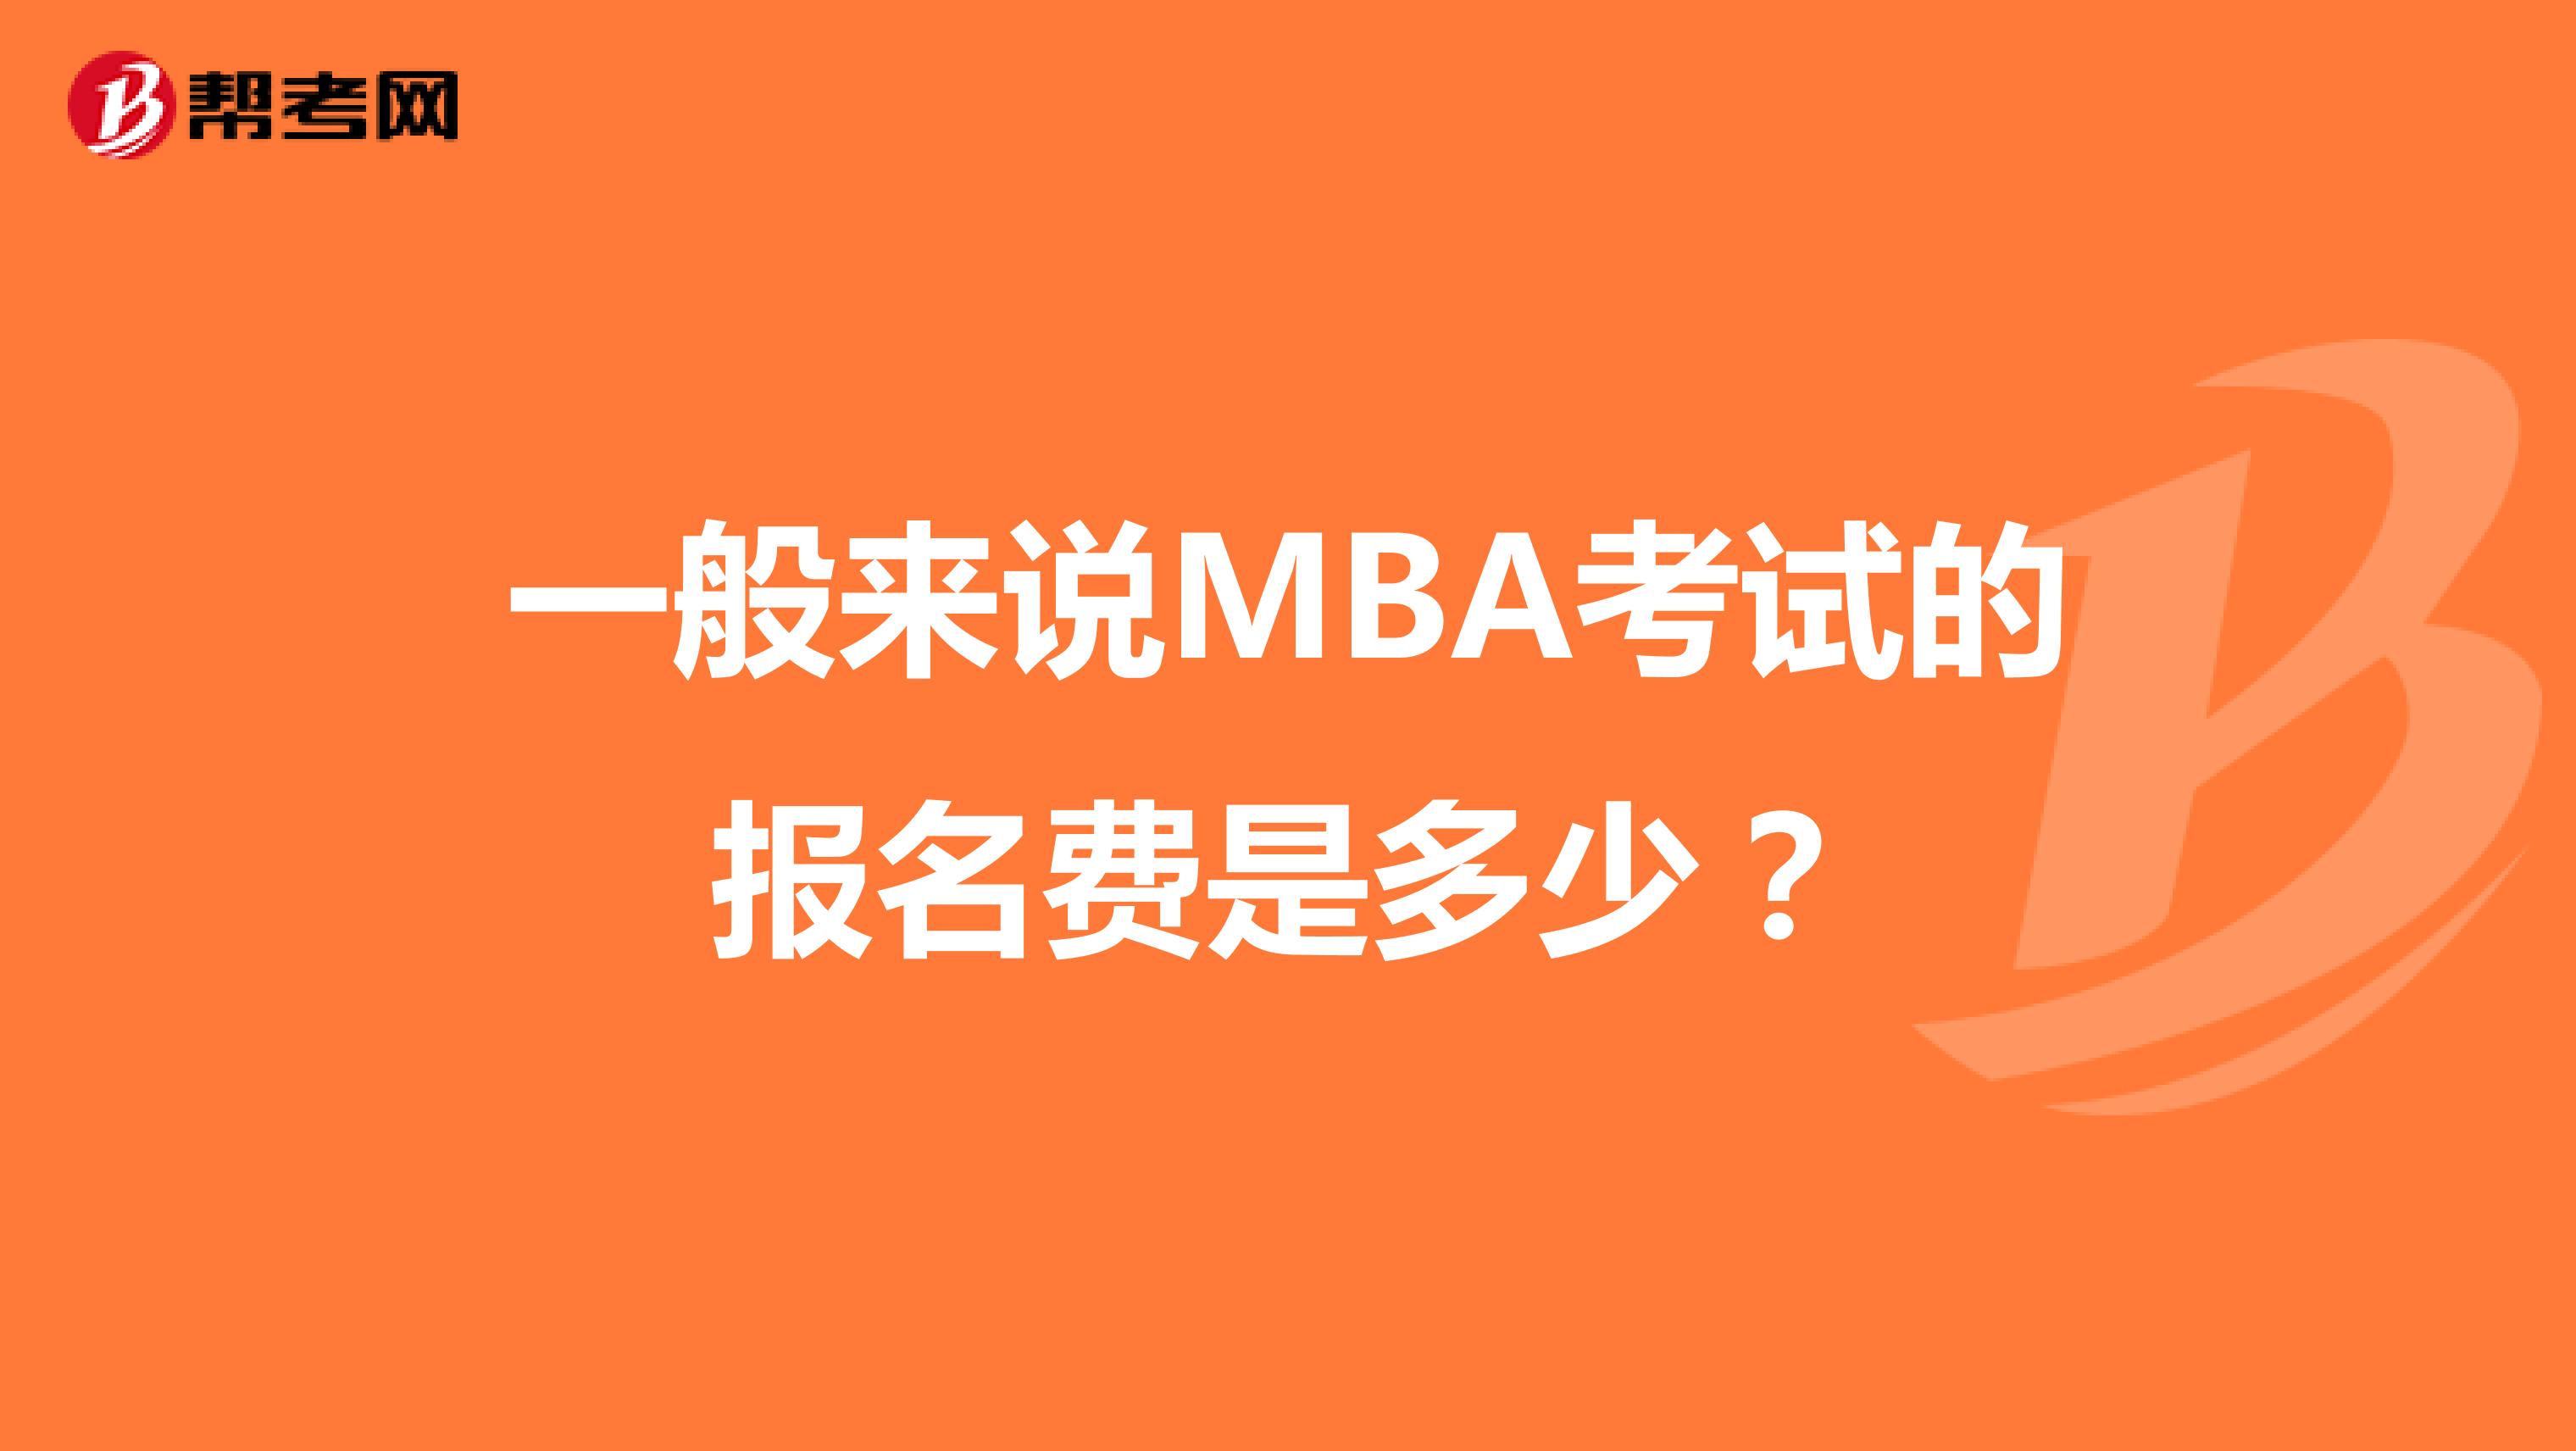 一般来说MBA考试的报名费是多少？